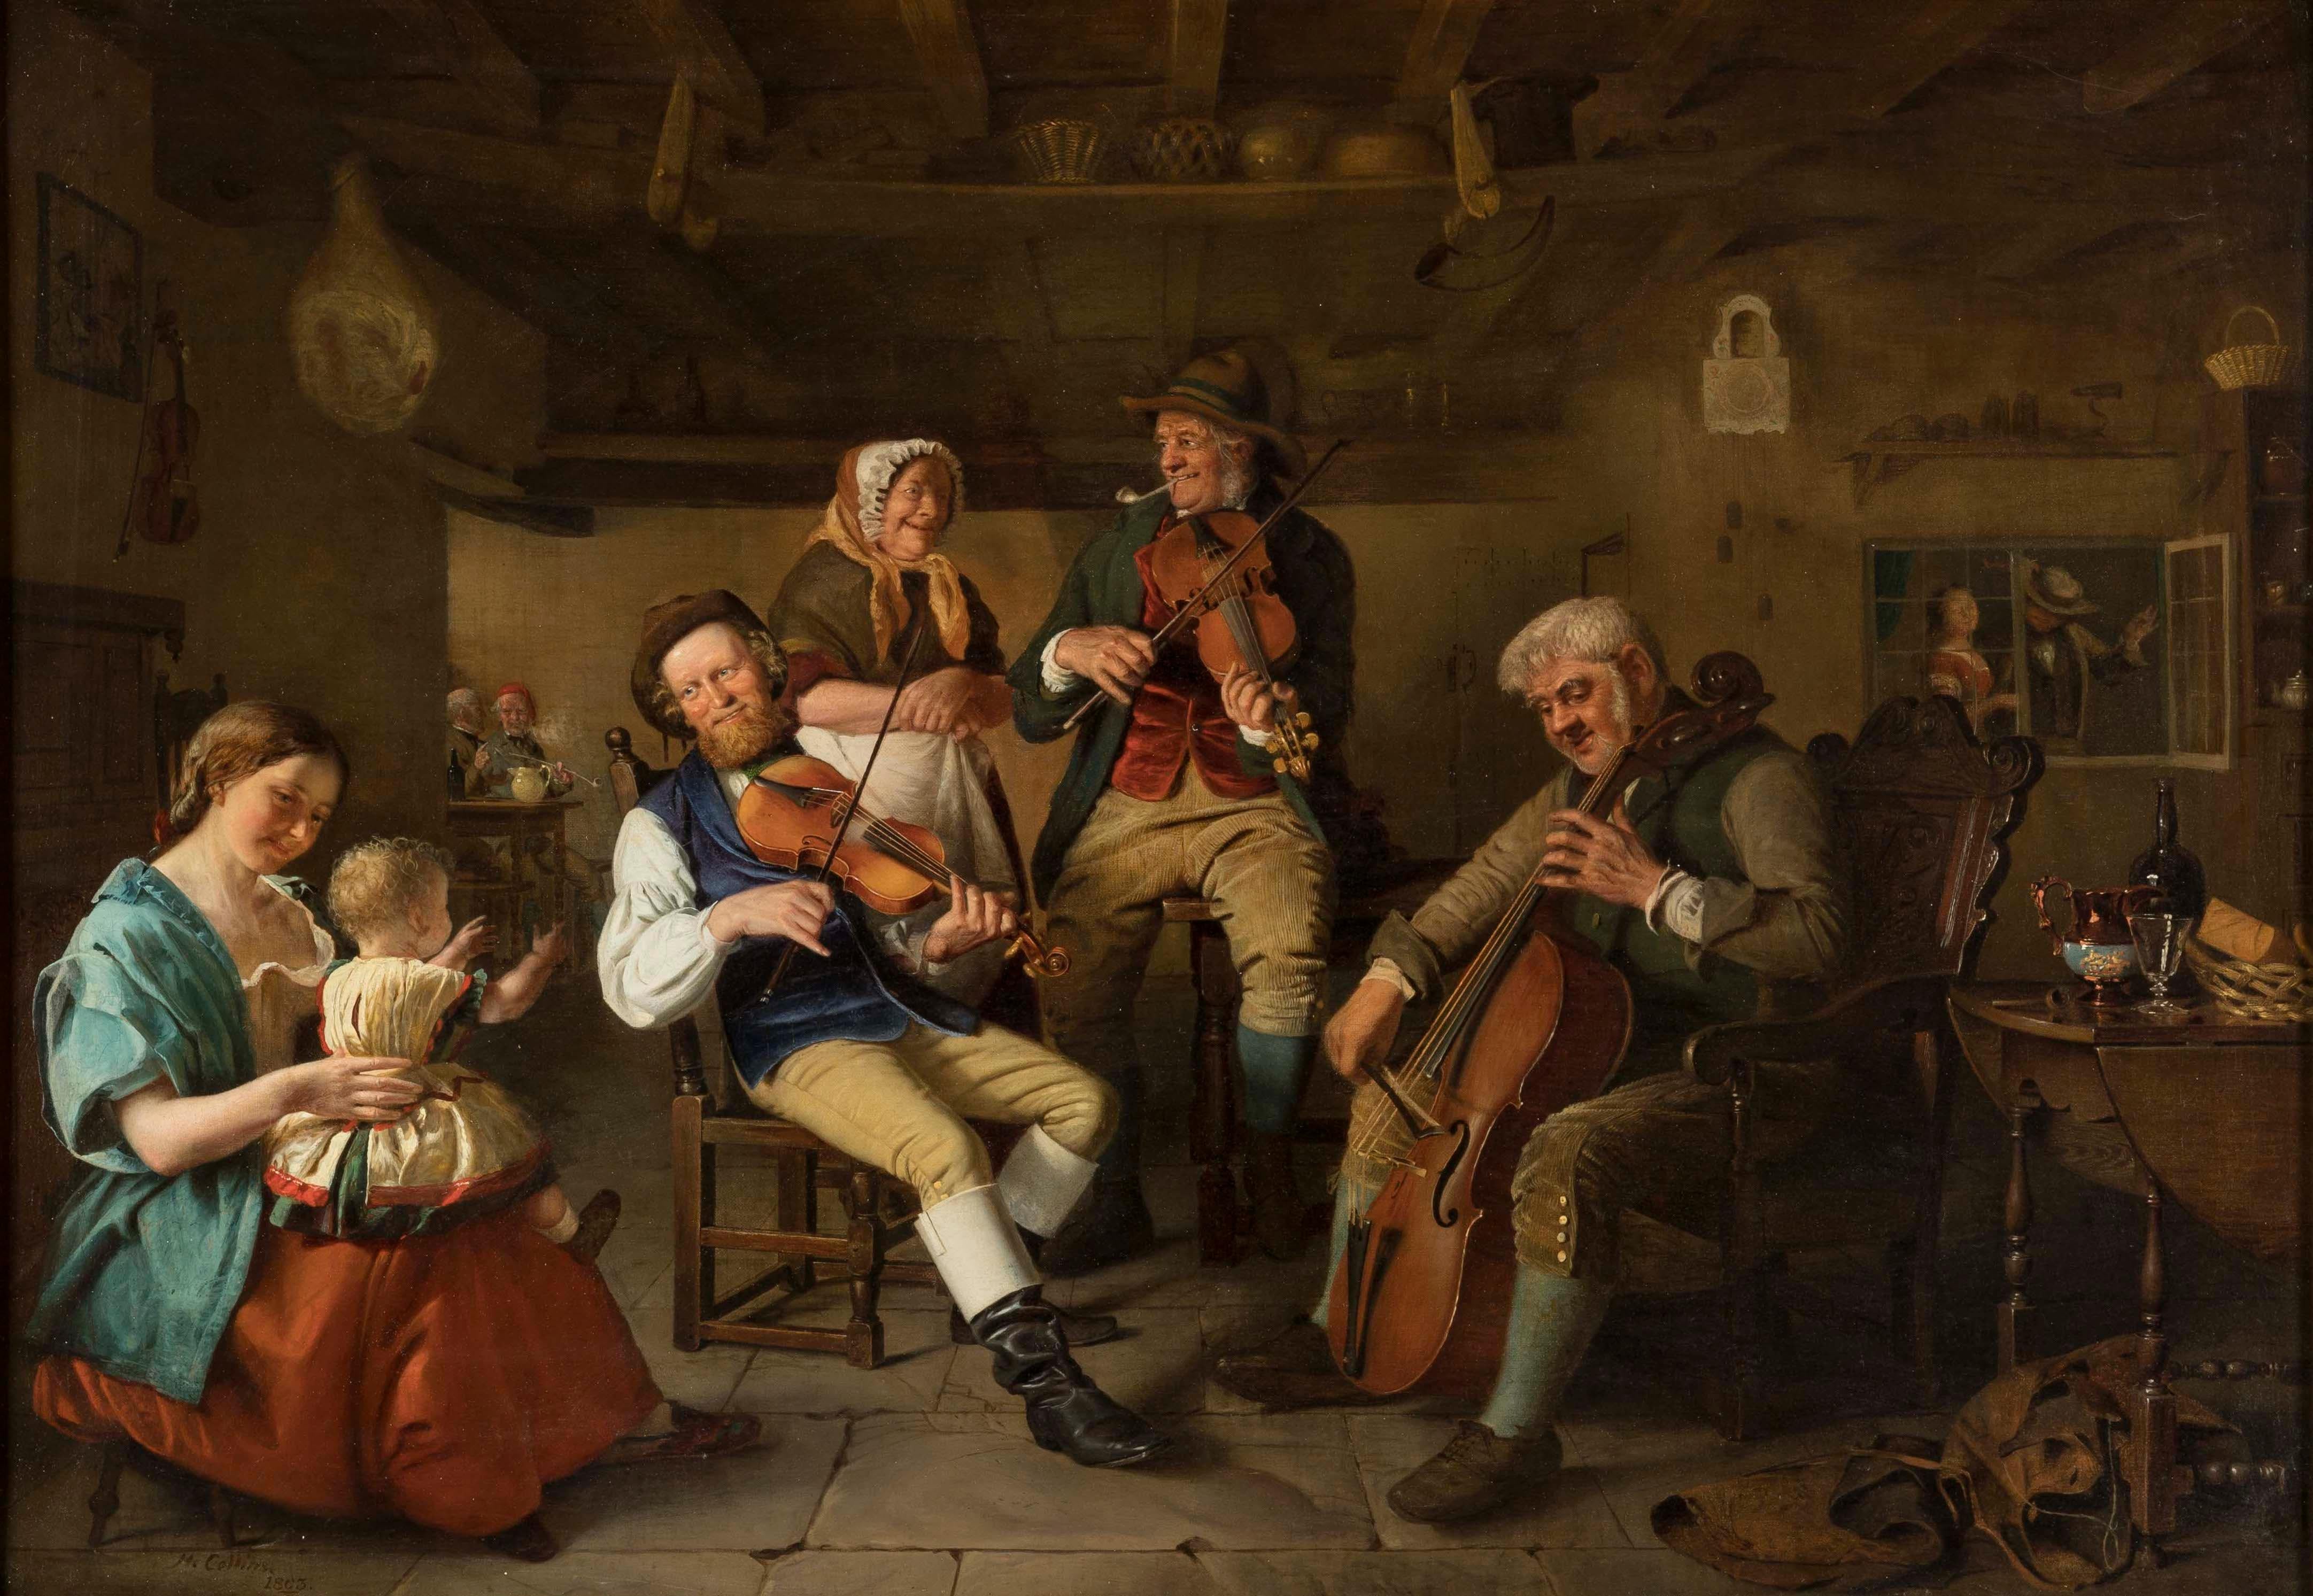 Une compagnie musicale
Par Hugh Collins (c. 1834-1896)

Peinte à l'huile sur toile, la scène de la taverne représente un trio de musiciens entouré de spectateurs captivés. Signé par l'artiste 